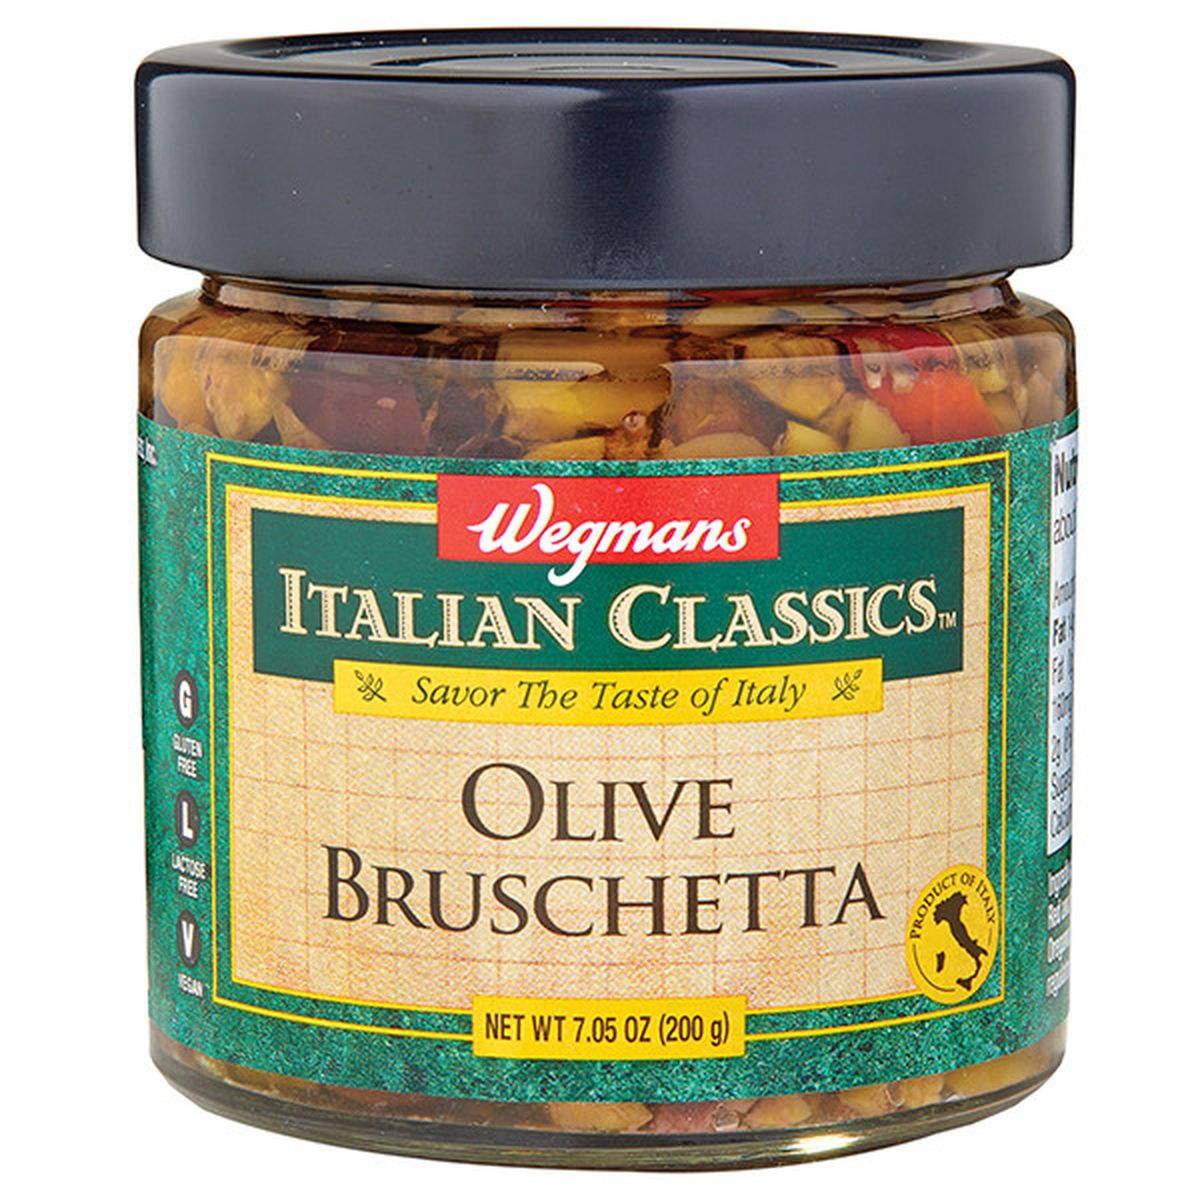 Calories in Wegmans Italian Classics Olive Bruschetta